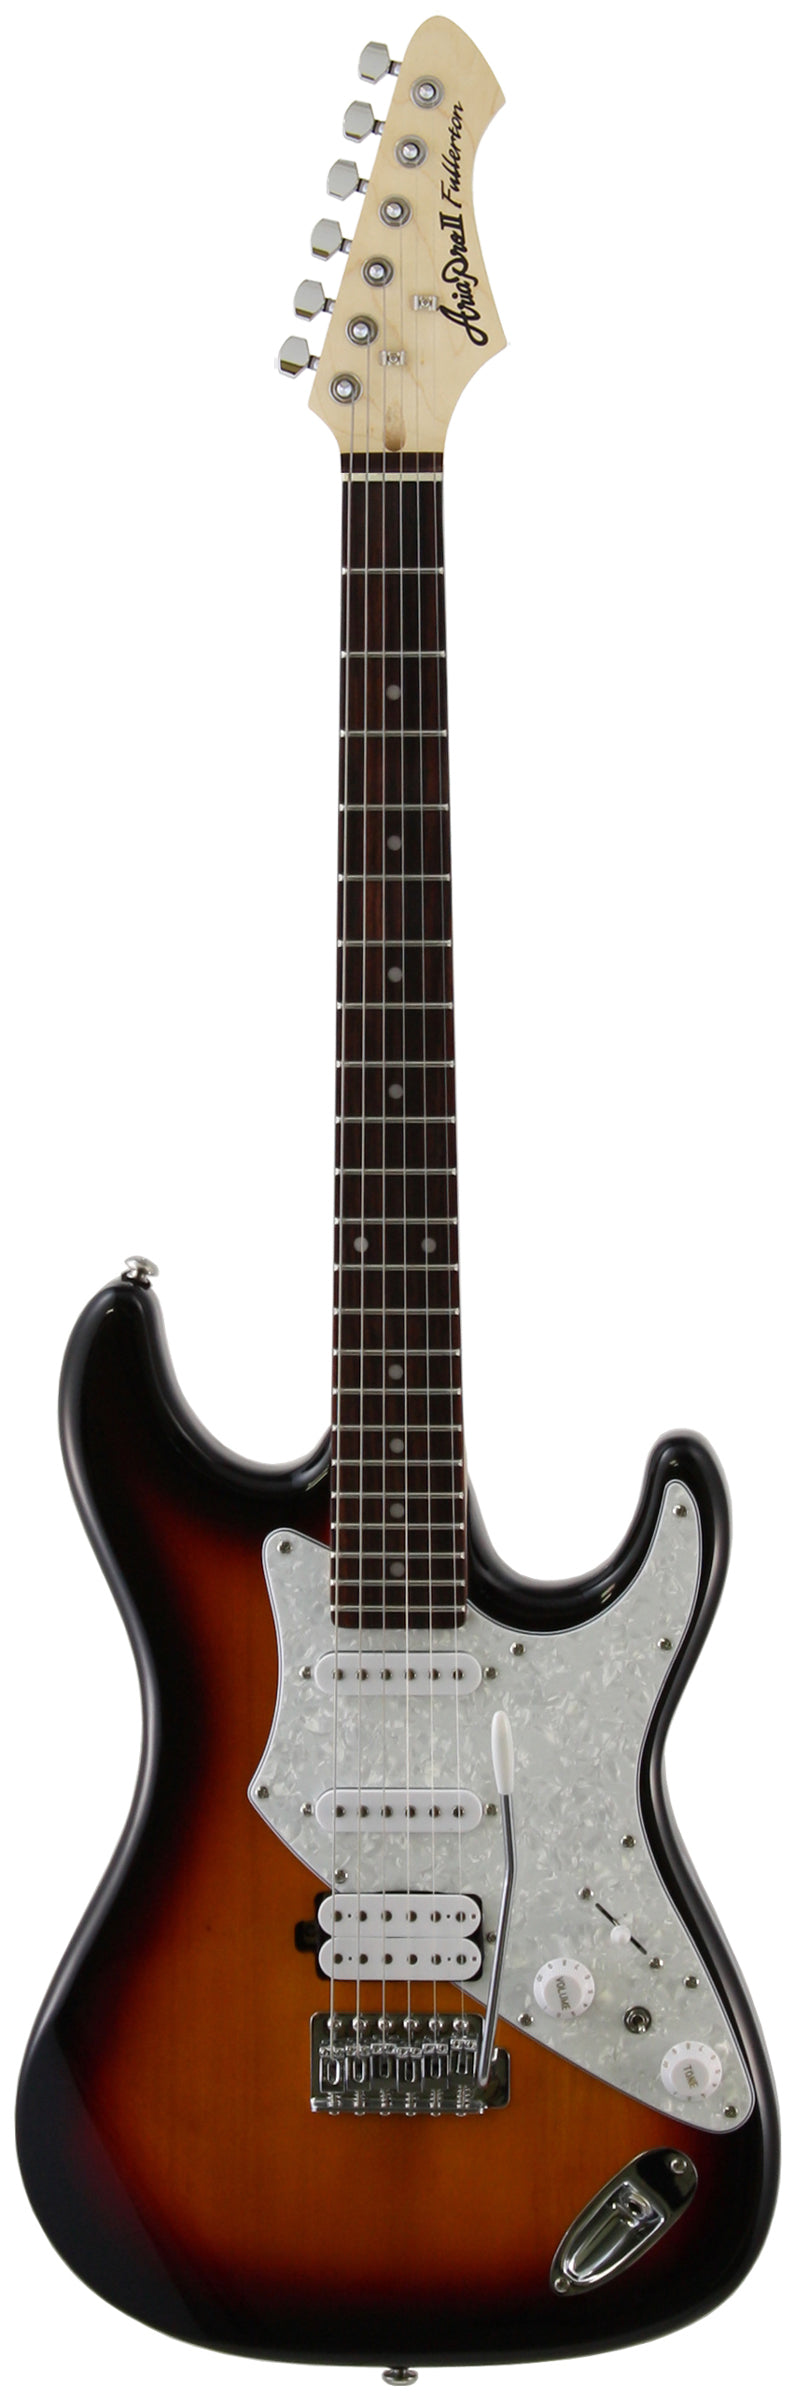 aria guitar model numbers